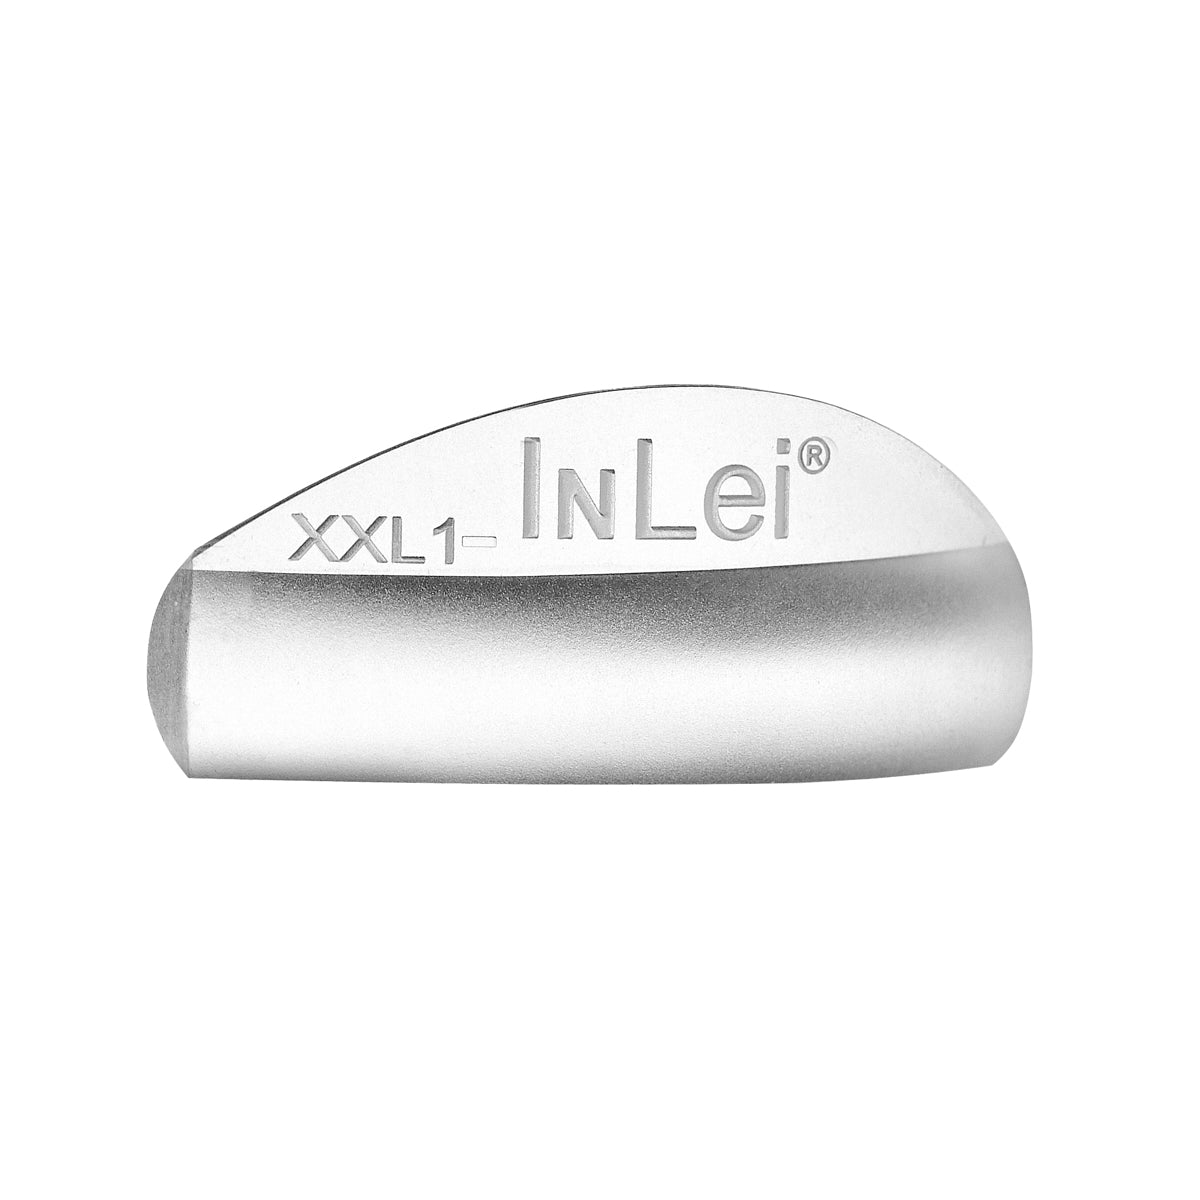 InLei® “ONE” - Silicon Shields XXL1